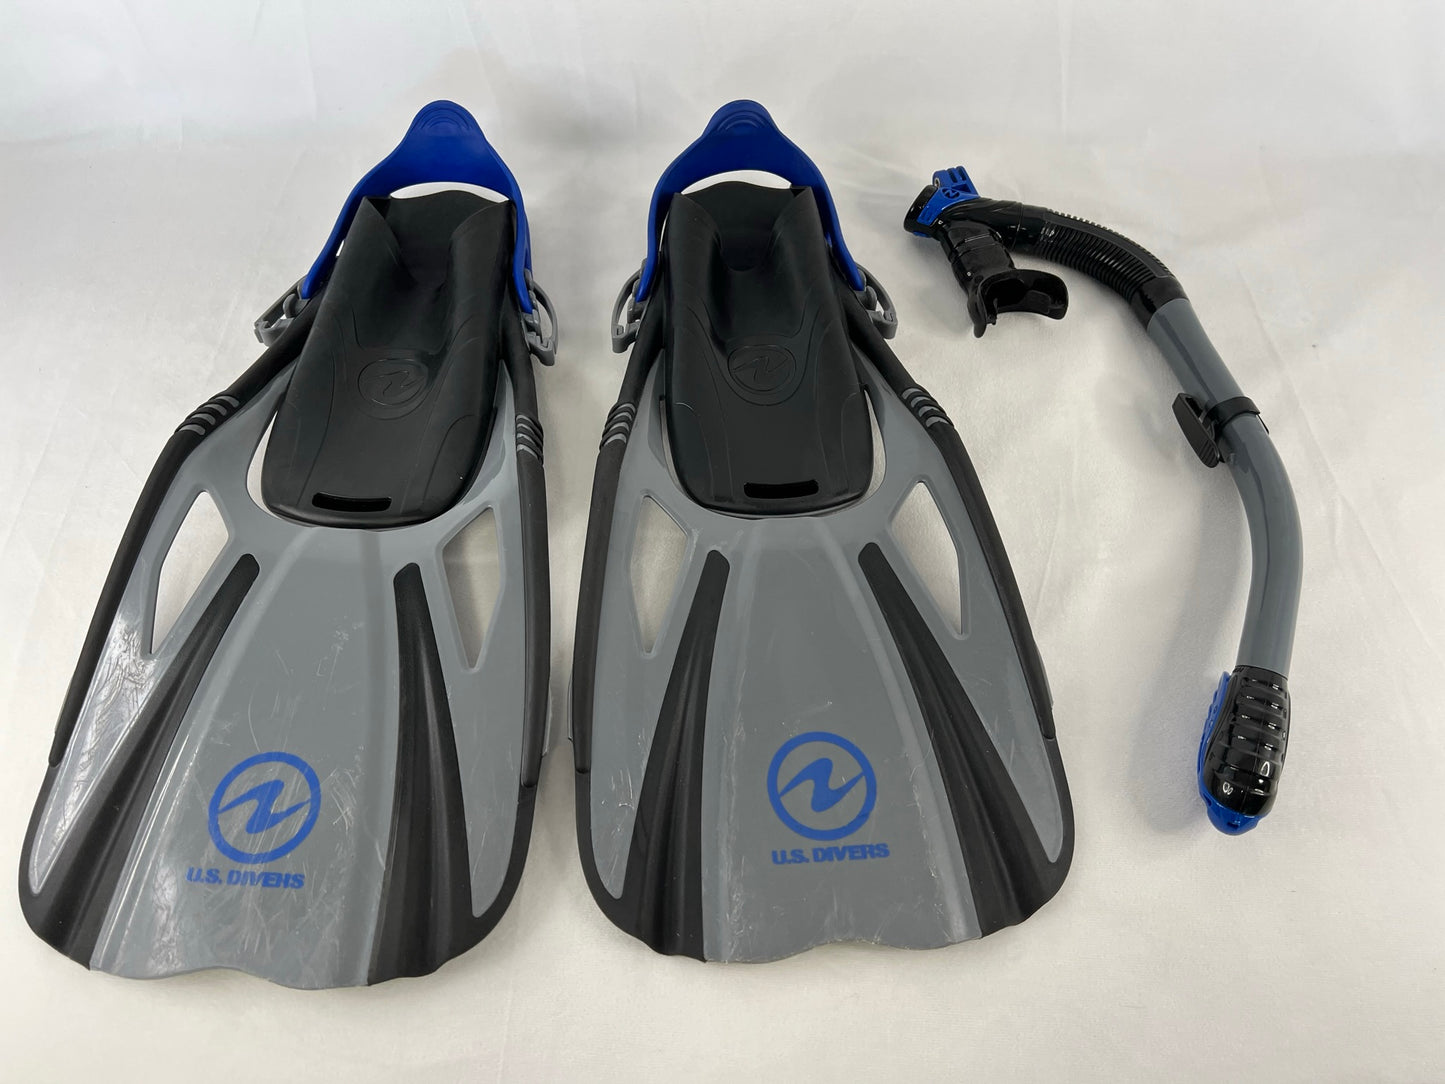 Snorkel Dive Fins Men's Shoe Size 9-13 US Divers Grey Black Blue Excellent